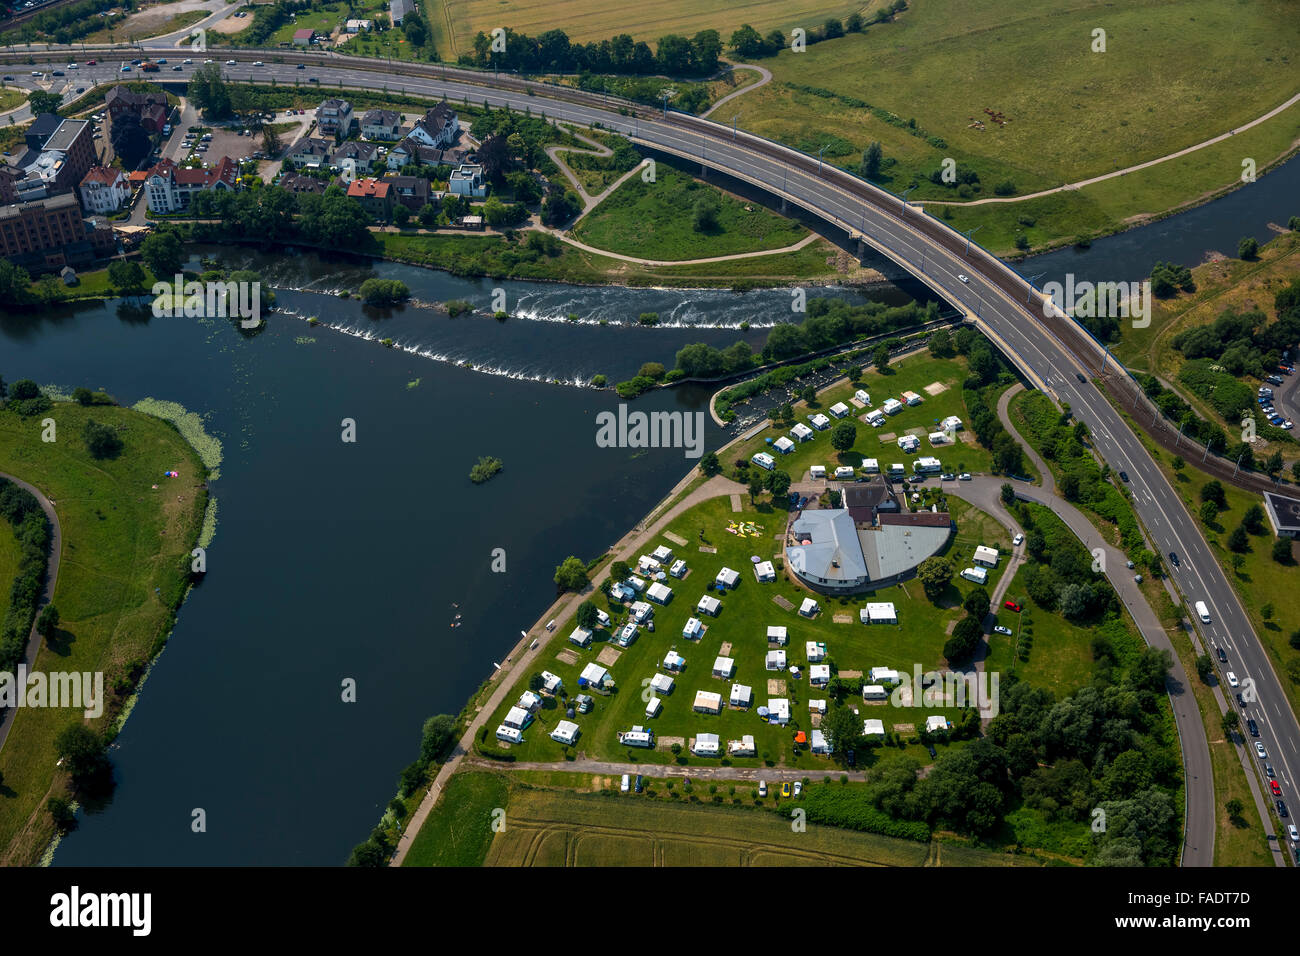 Aerial view, camping Jutta Stolle and Ruhr in Hattingen, Ruhr, Hattingen, Ruhr region, North rhine westphalia, Germany, Europe, Stock Photo